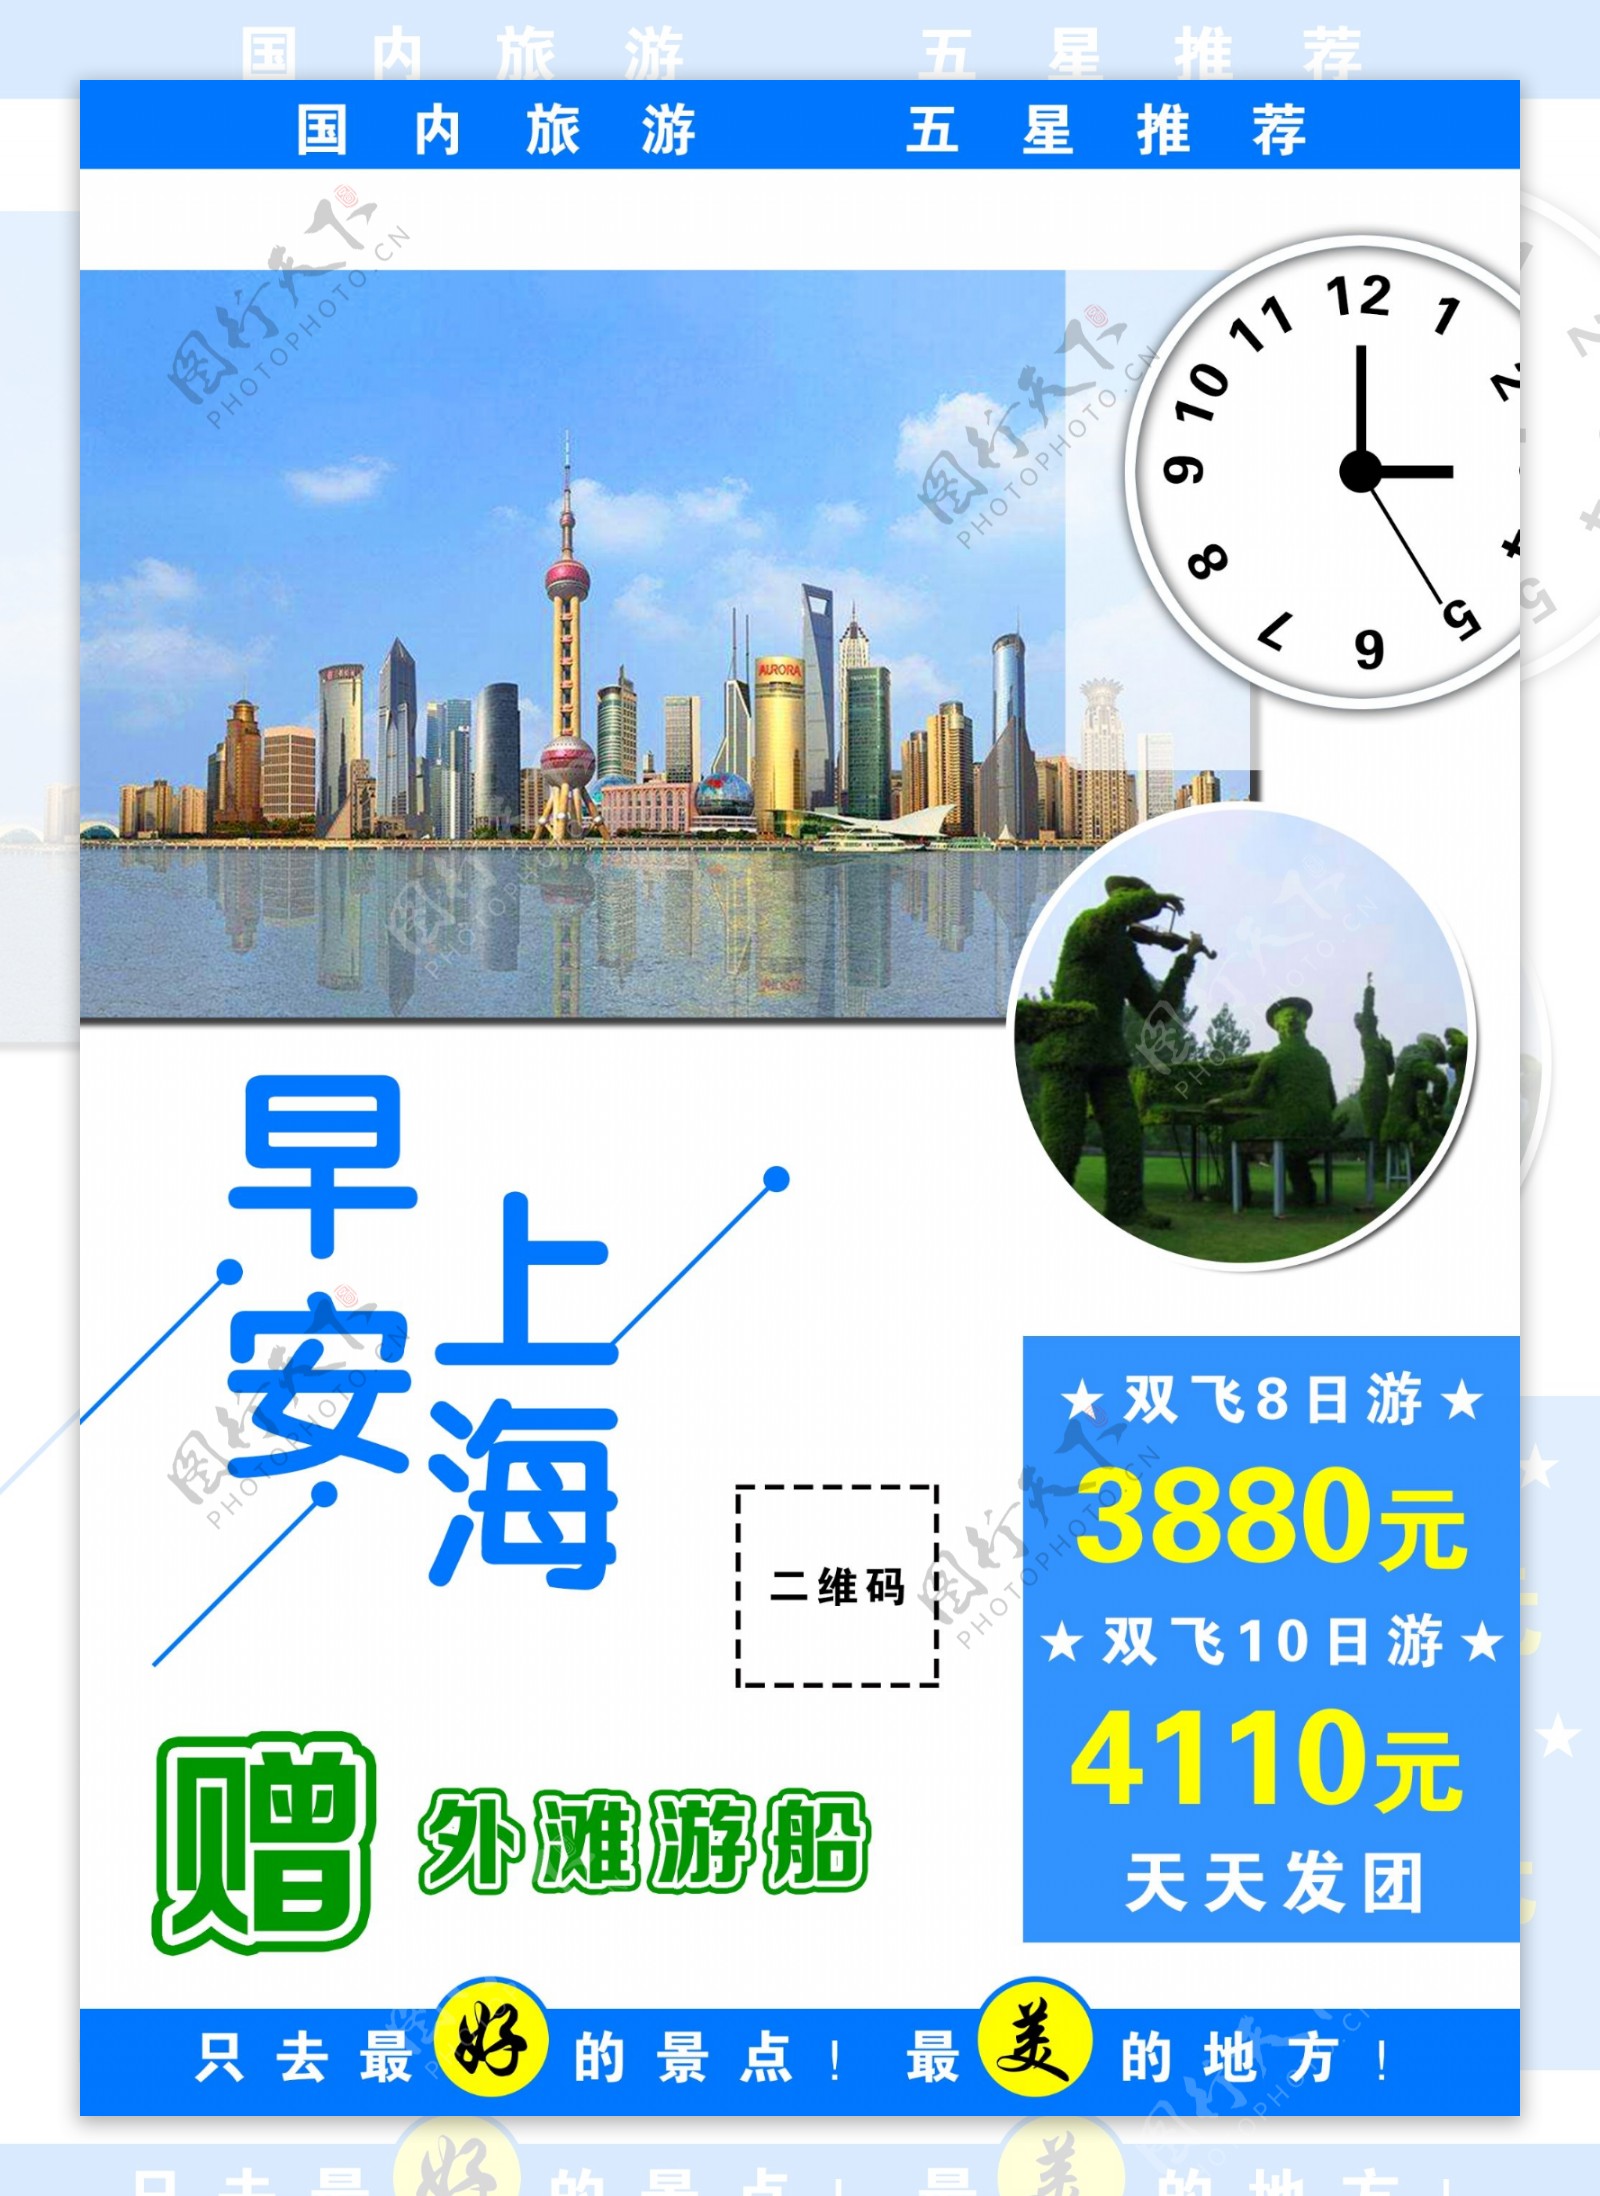 上海旅游海报